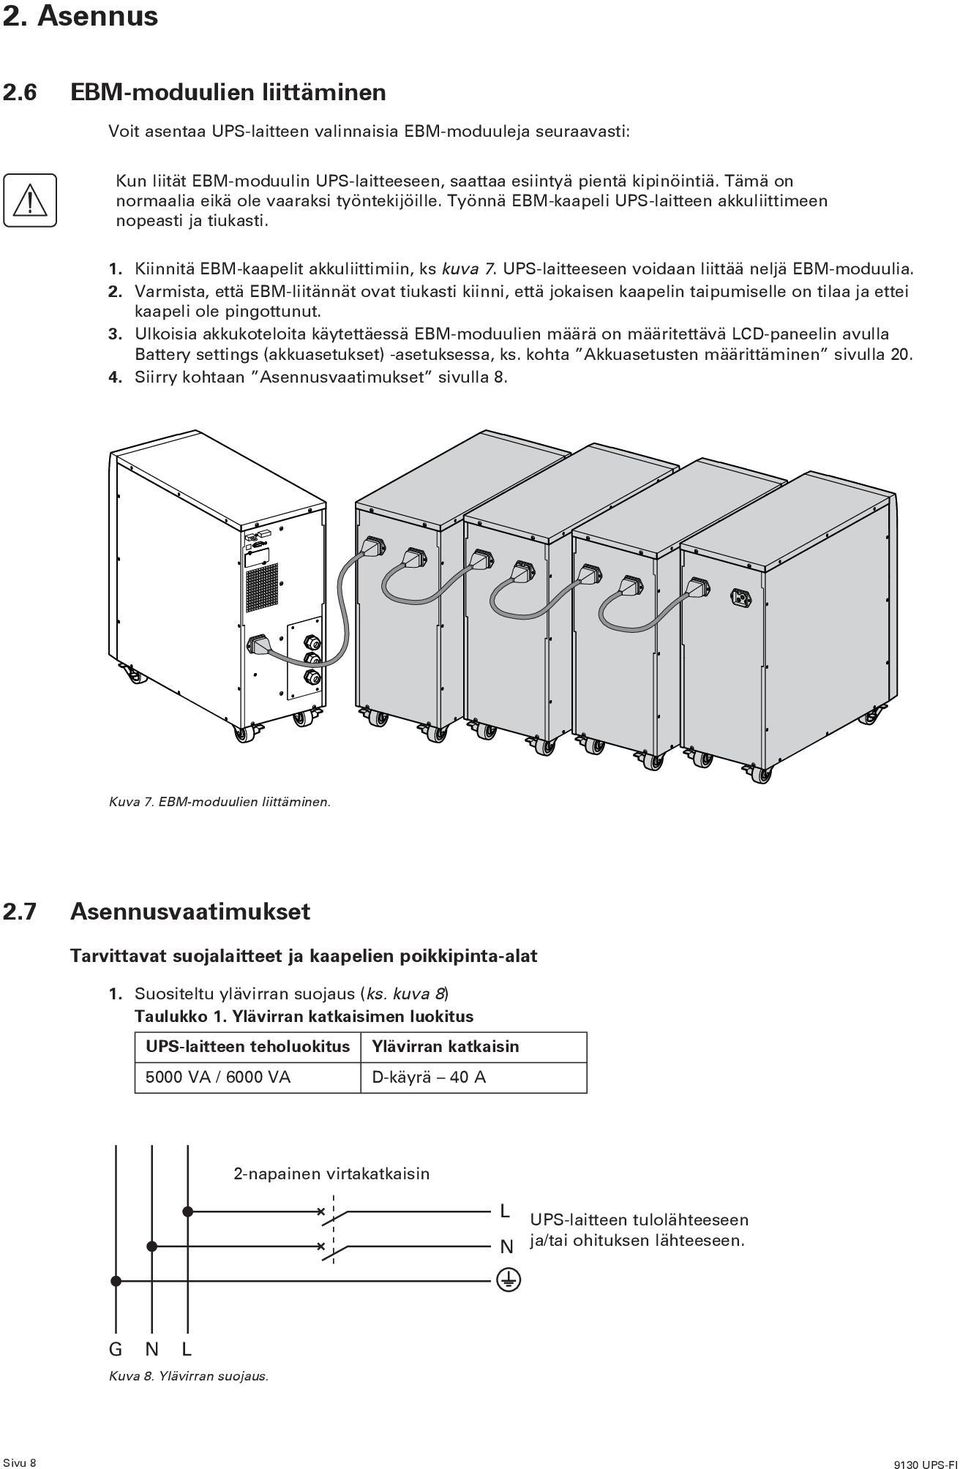 UPS-laitteeseen voidaan liittää neljä EBM-moduulia. 2. Varmista, että EBM-liitännät ovat tiukasti kiinni, että jokaisen kaapelin taipumiselle on tilaa ja ettei kaapeli ole pingottunut. 3.